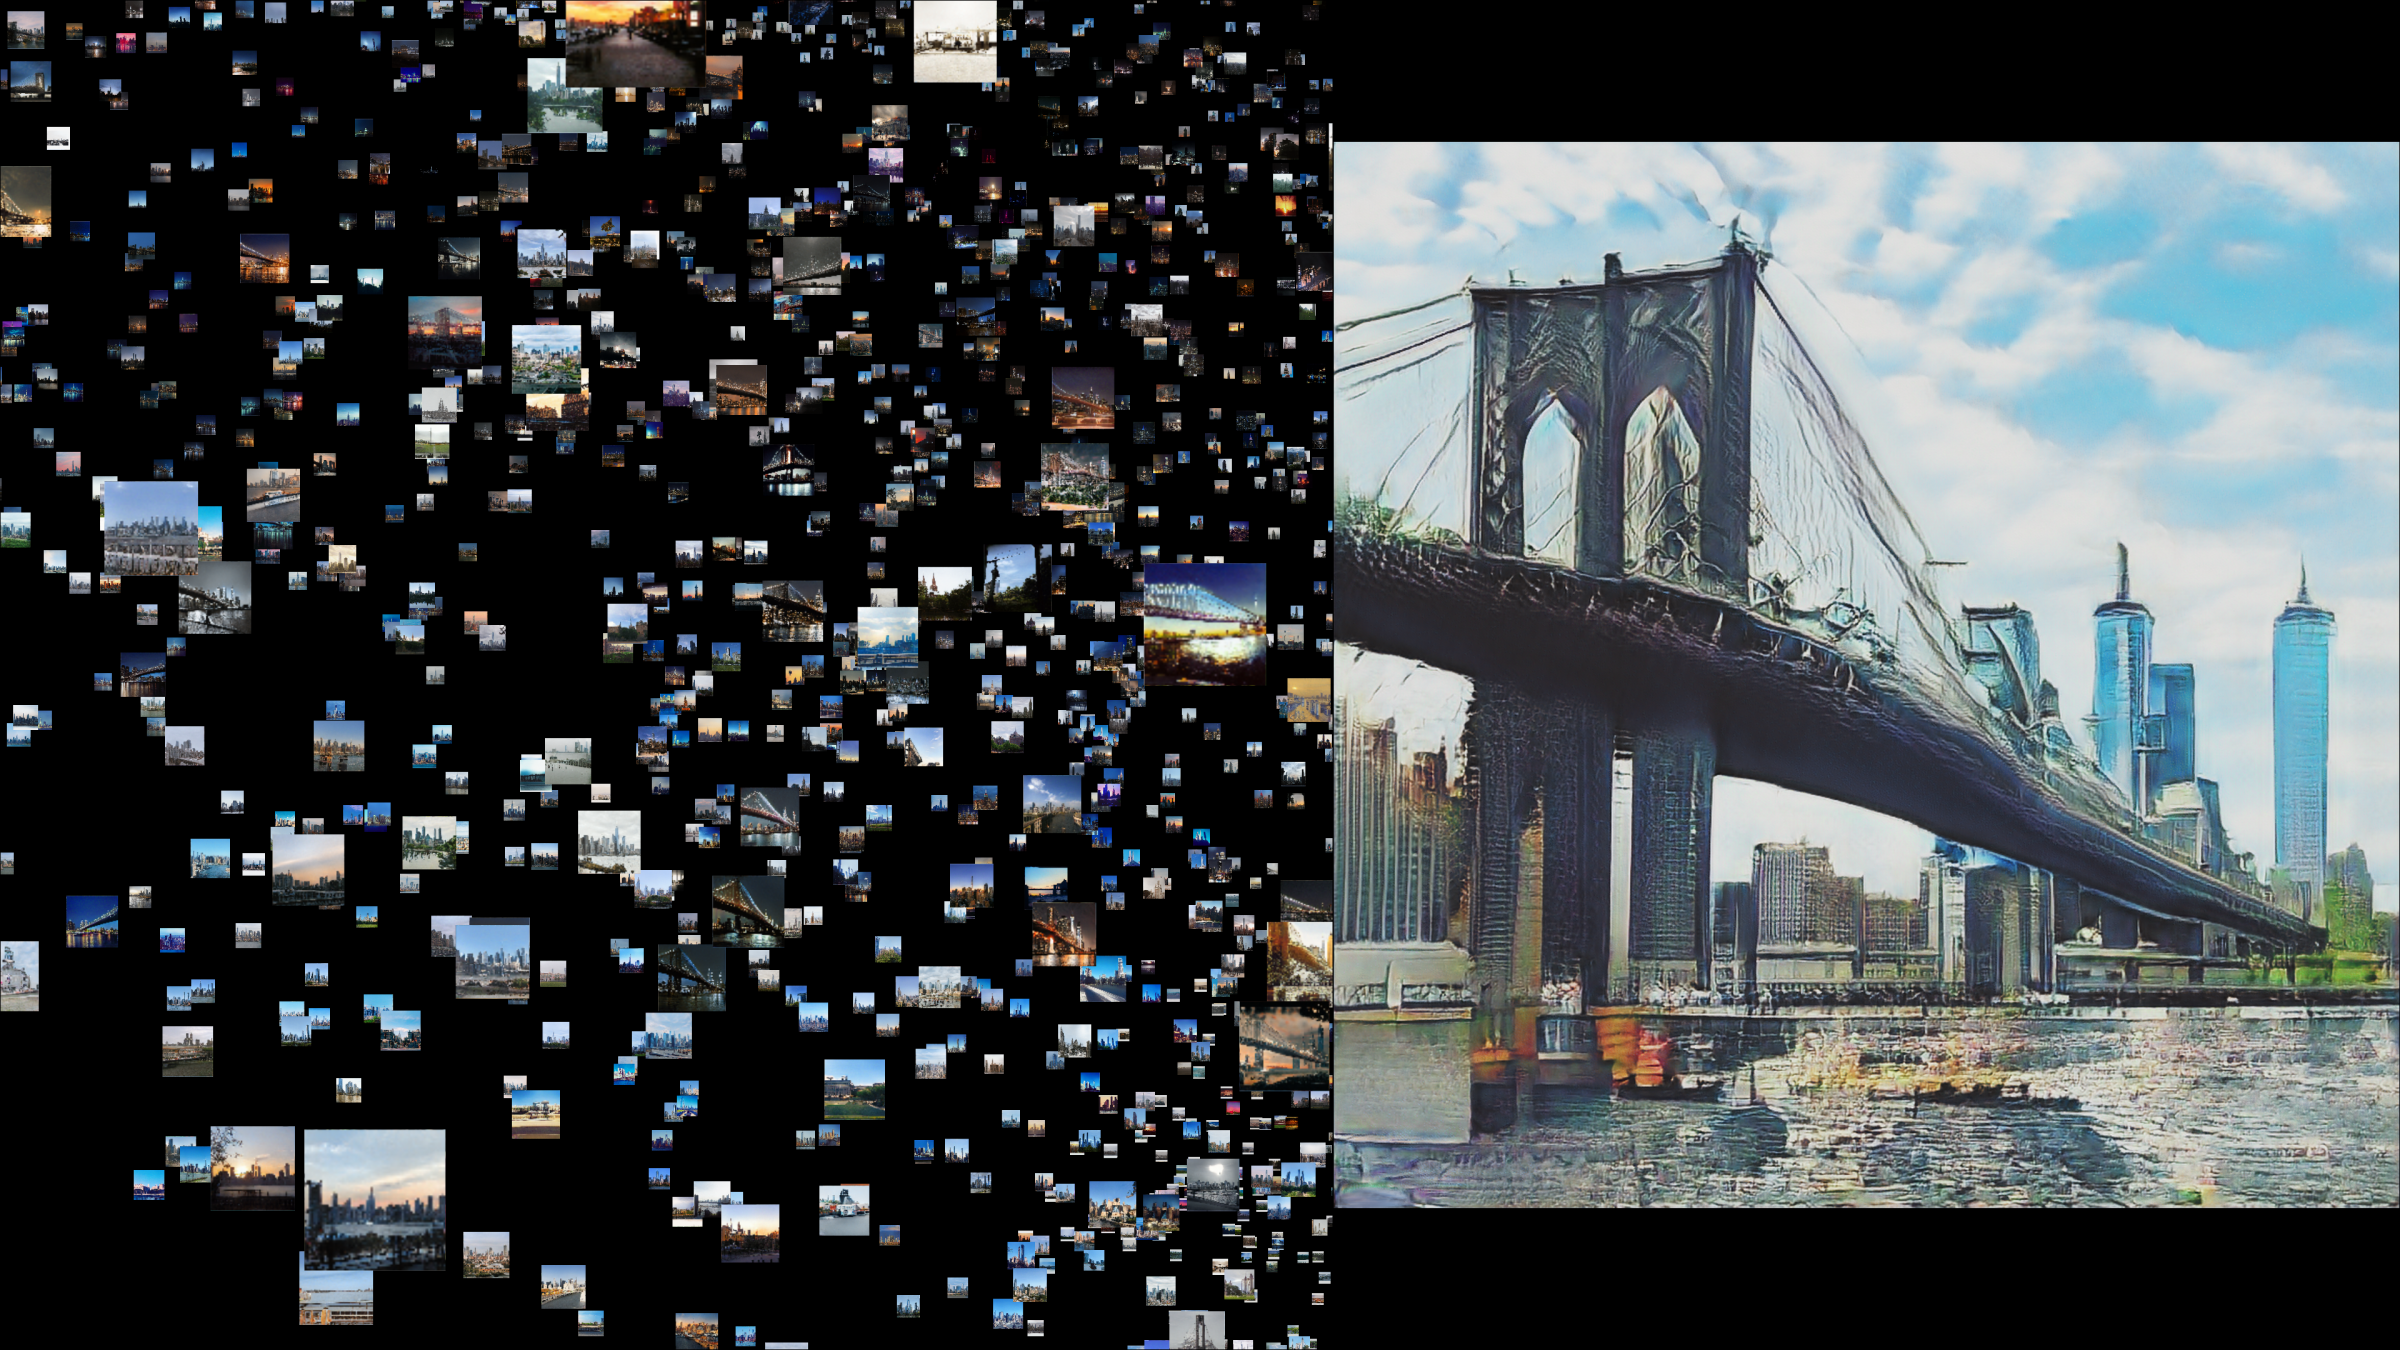 Il ponte di Brookly disegnato dall'AI a partire dalle immagini raccolte sui social